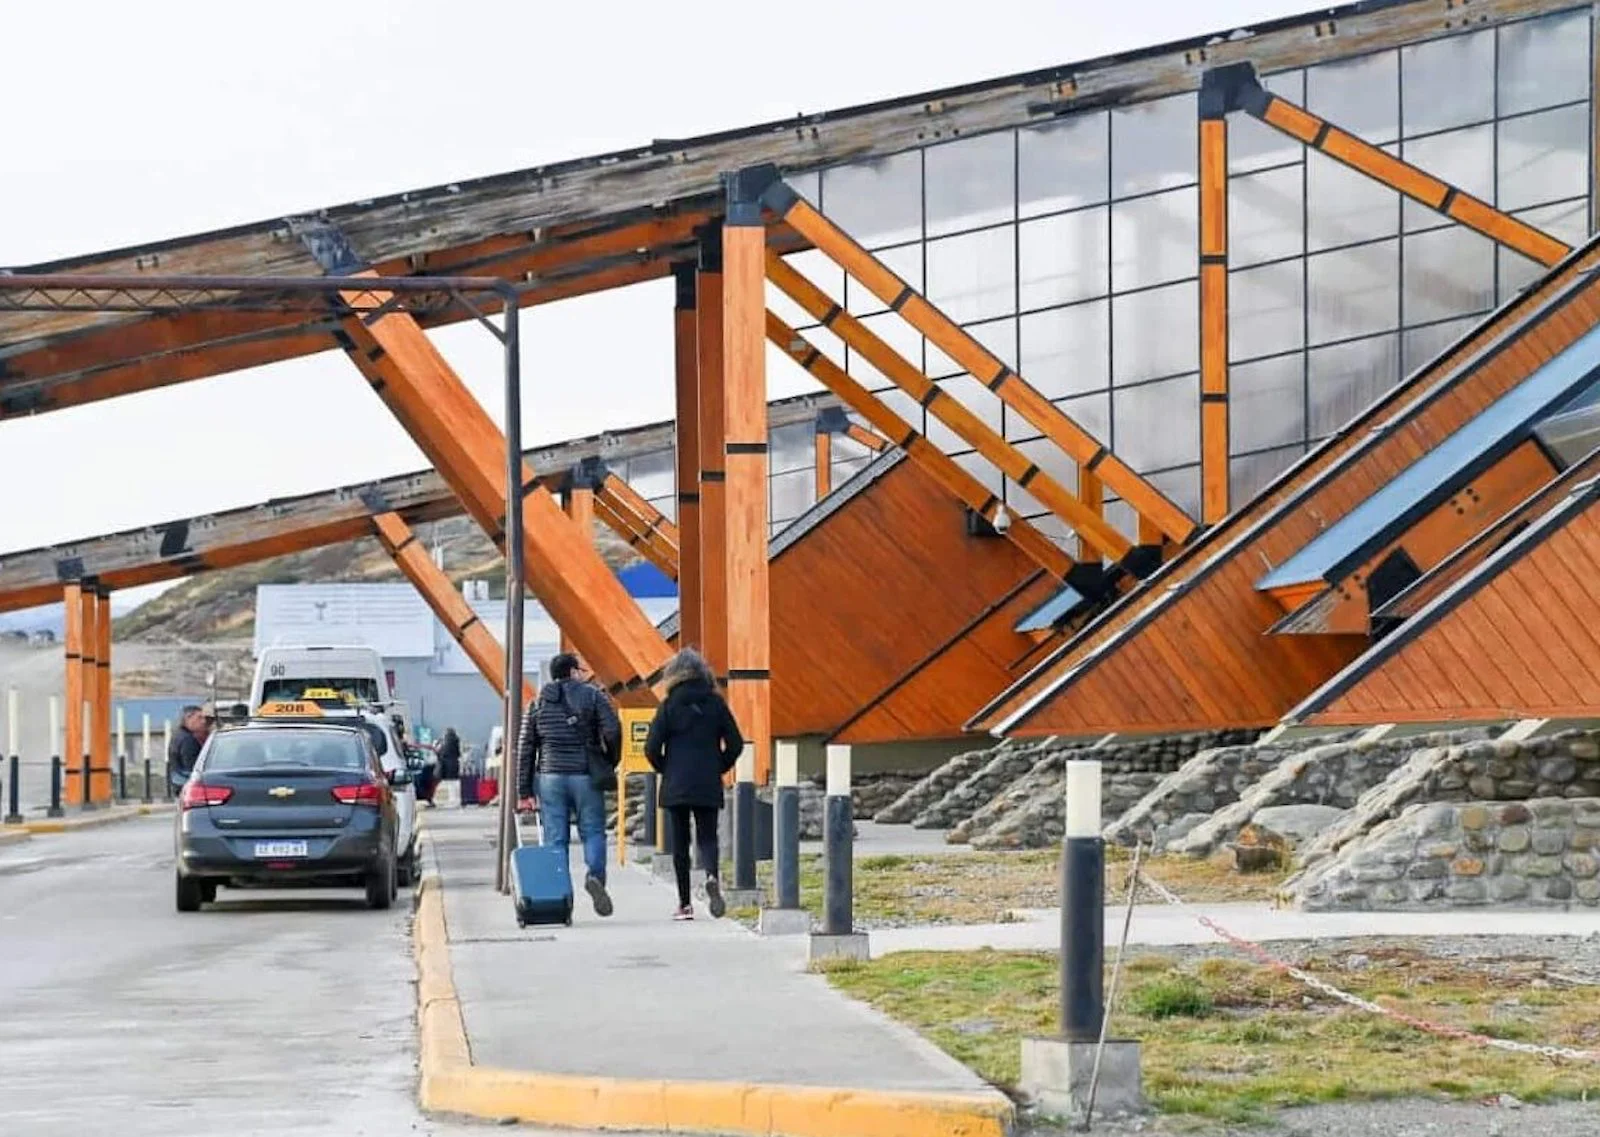 Aeropuerto de Ushuaia en Tierra del Fuego -